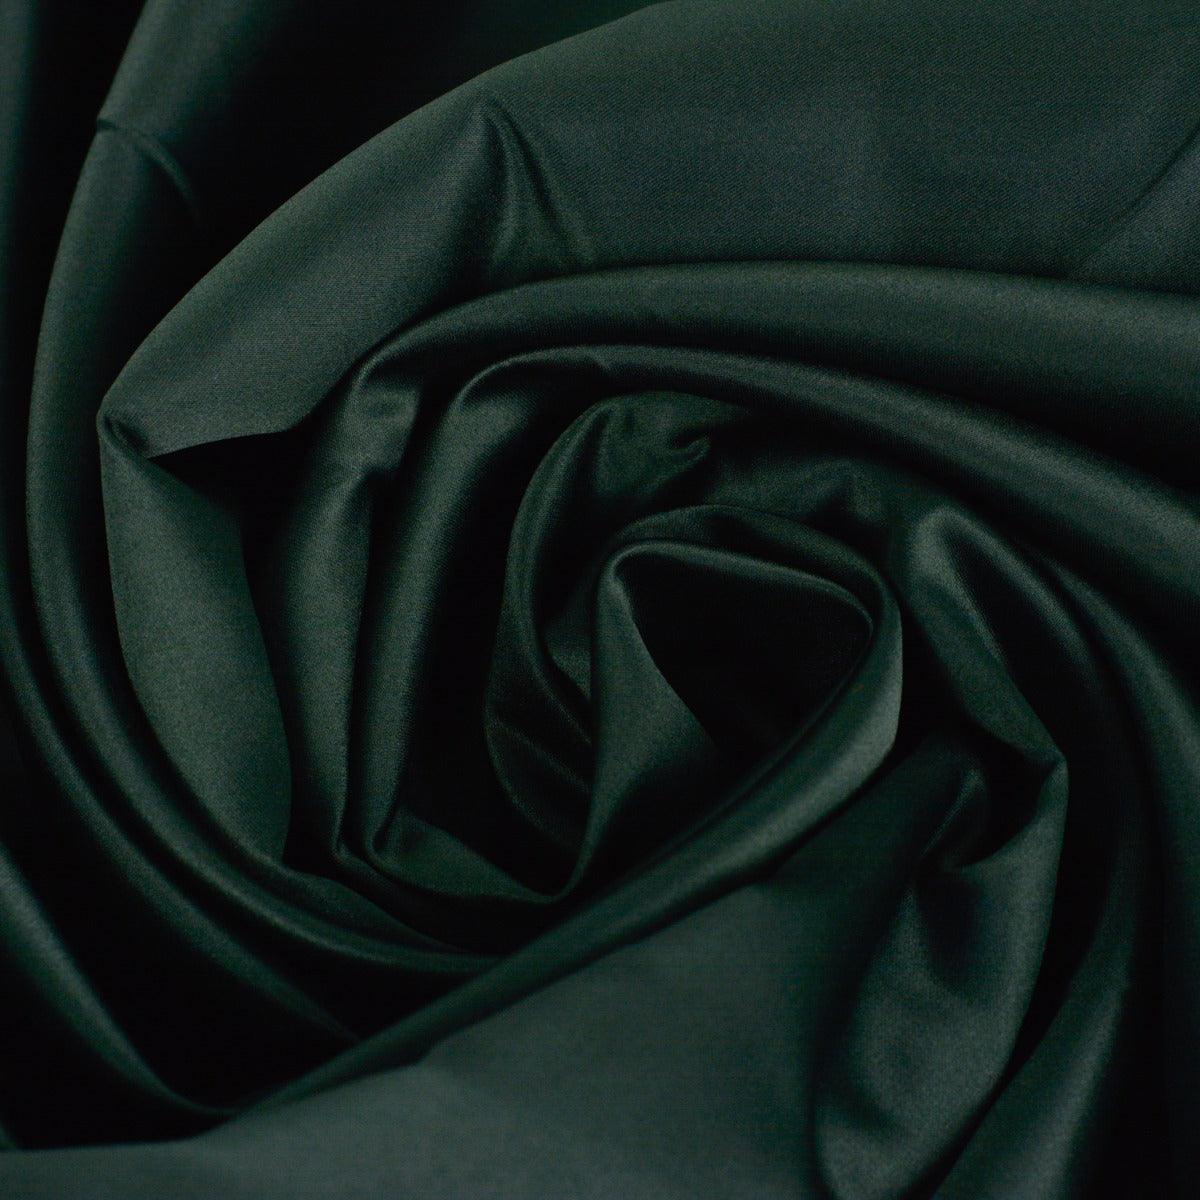 Tafta fixa - Verde negru Perlat folosita la fabricarea rochiilor